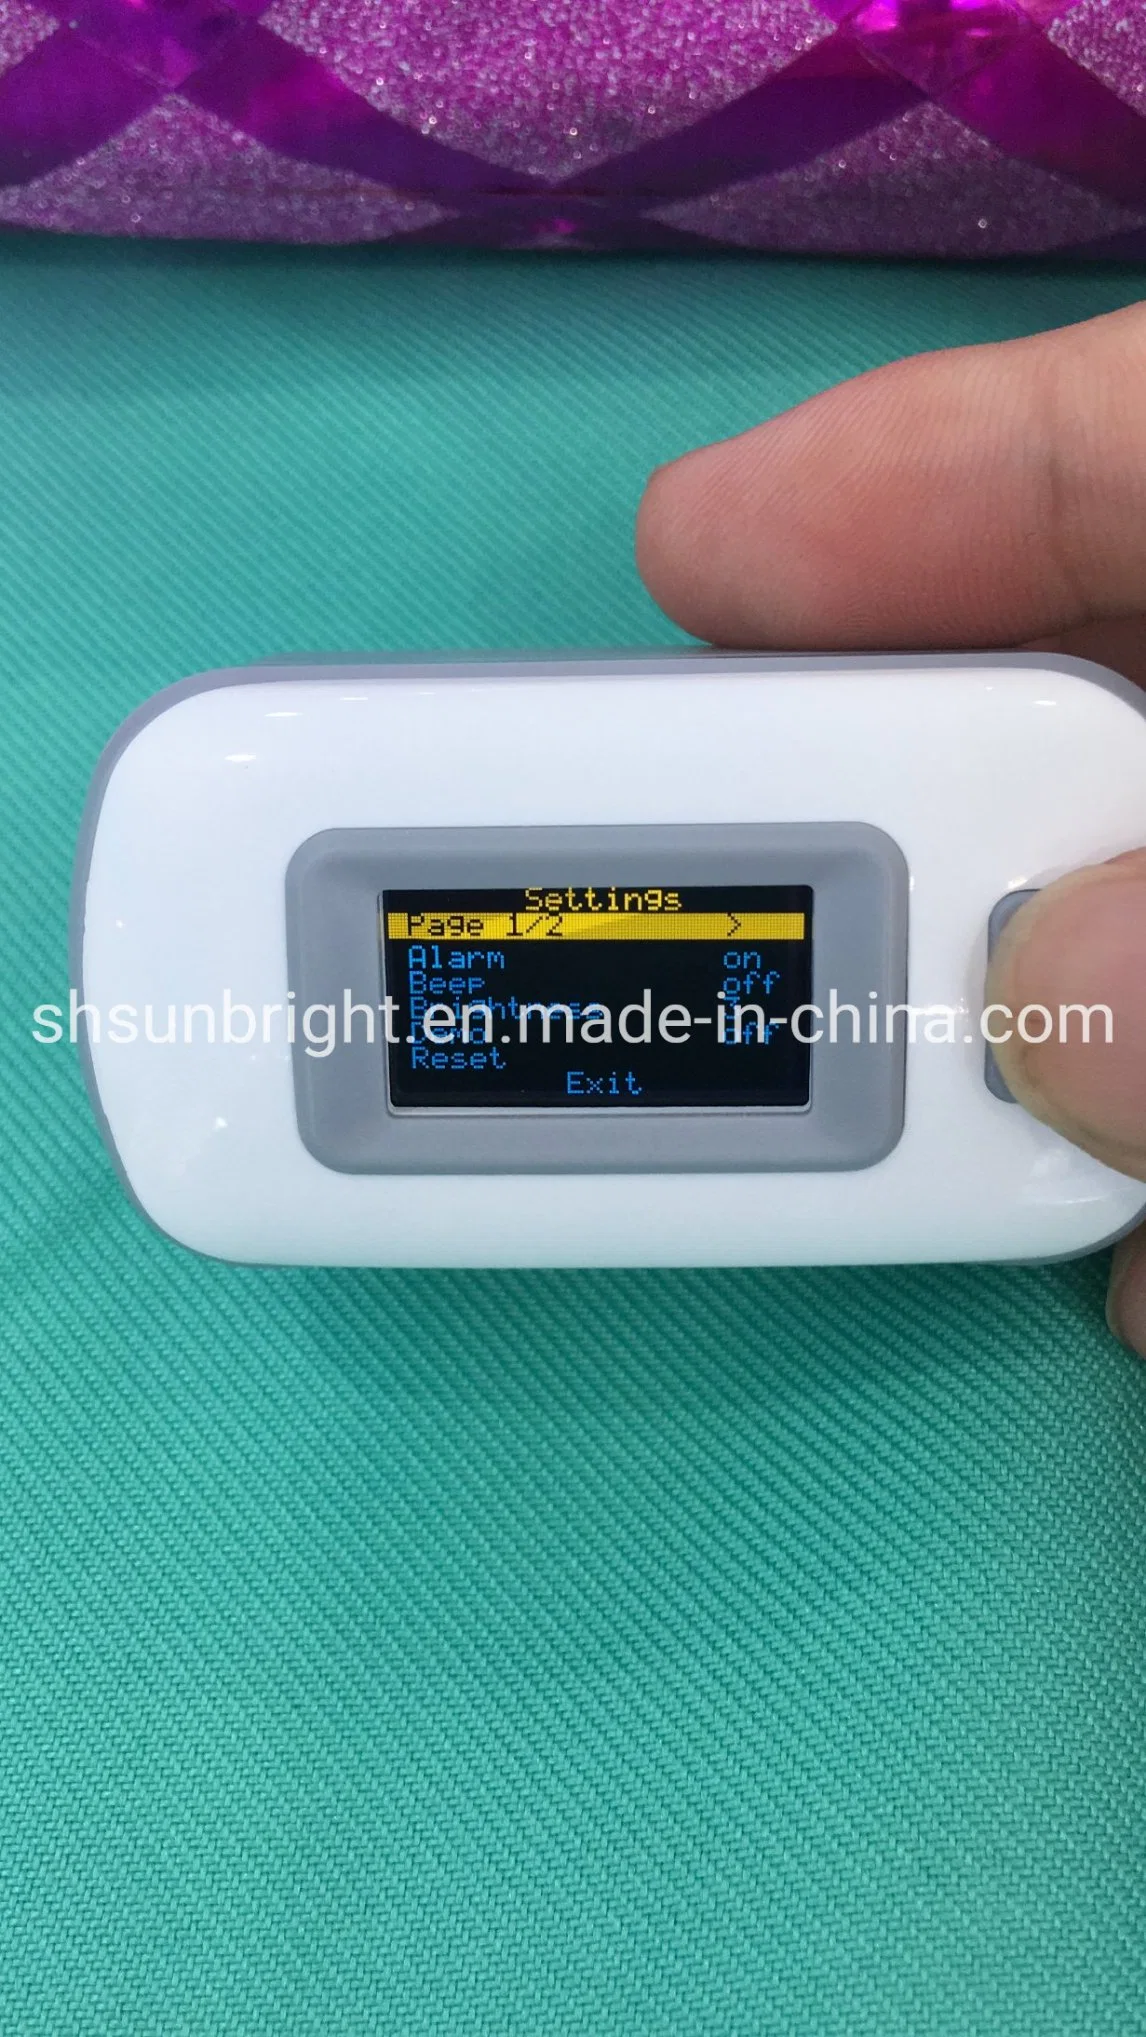 Medical Oximeter Equipment Portable Handheld Fingertip Pulse Oximeter SpO2